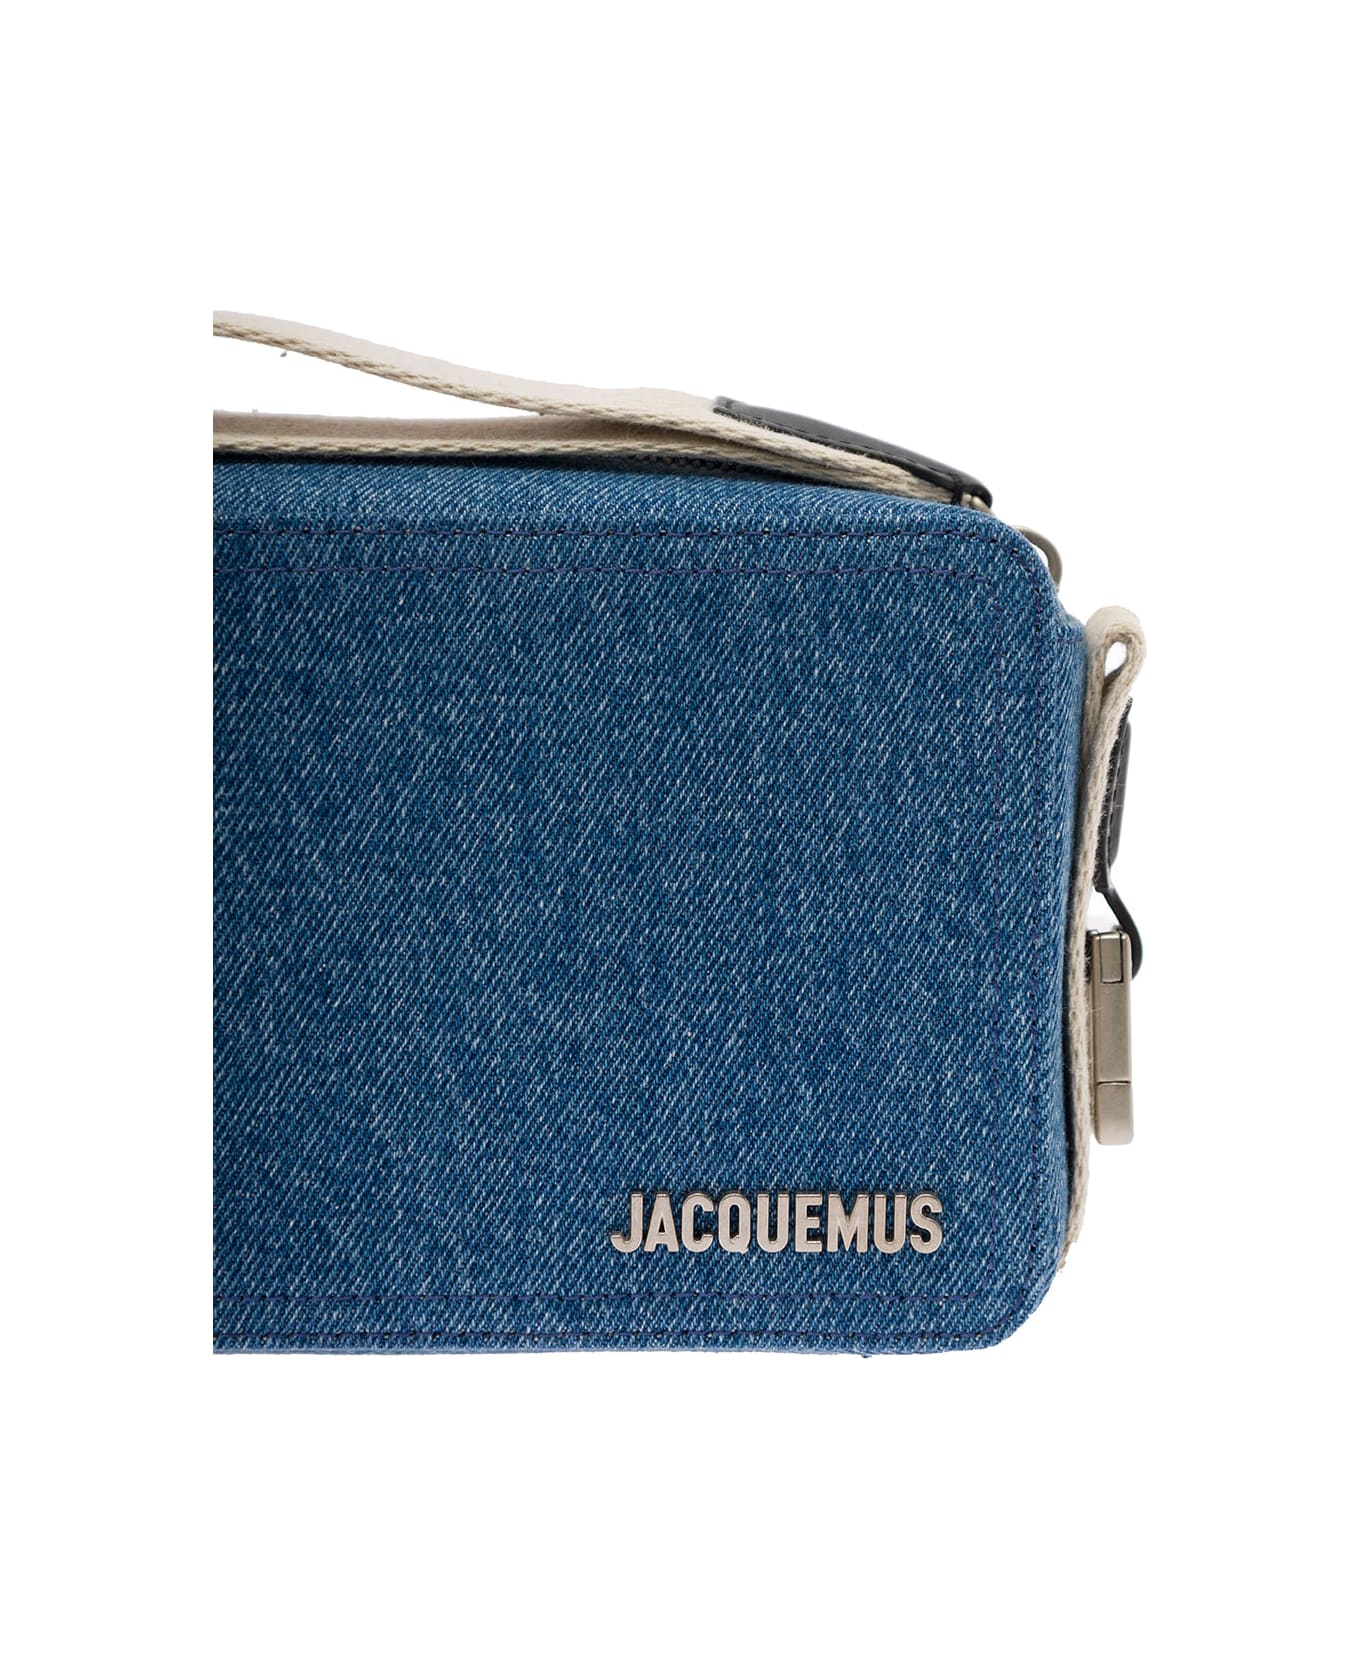 Jacquemus Denim Rectangle Bag - Blu ショルダーバッグ